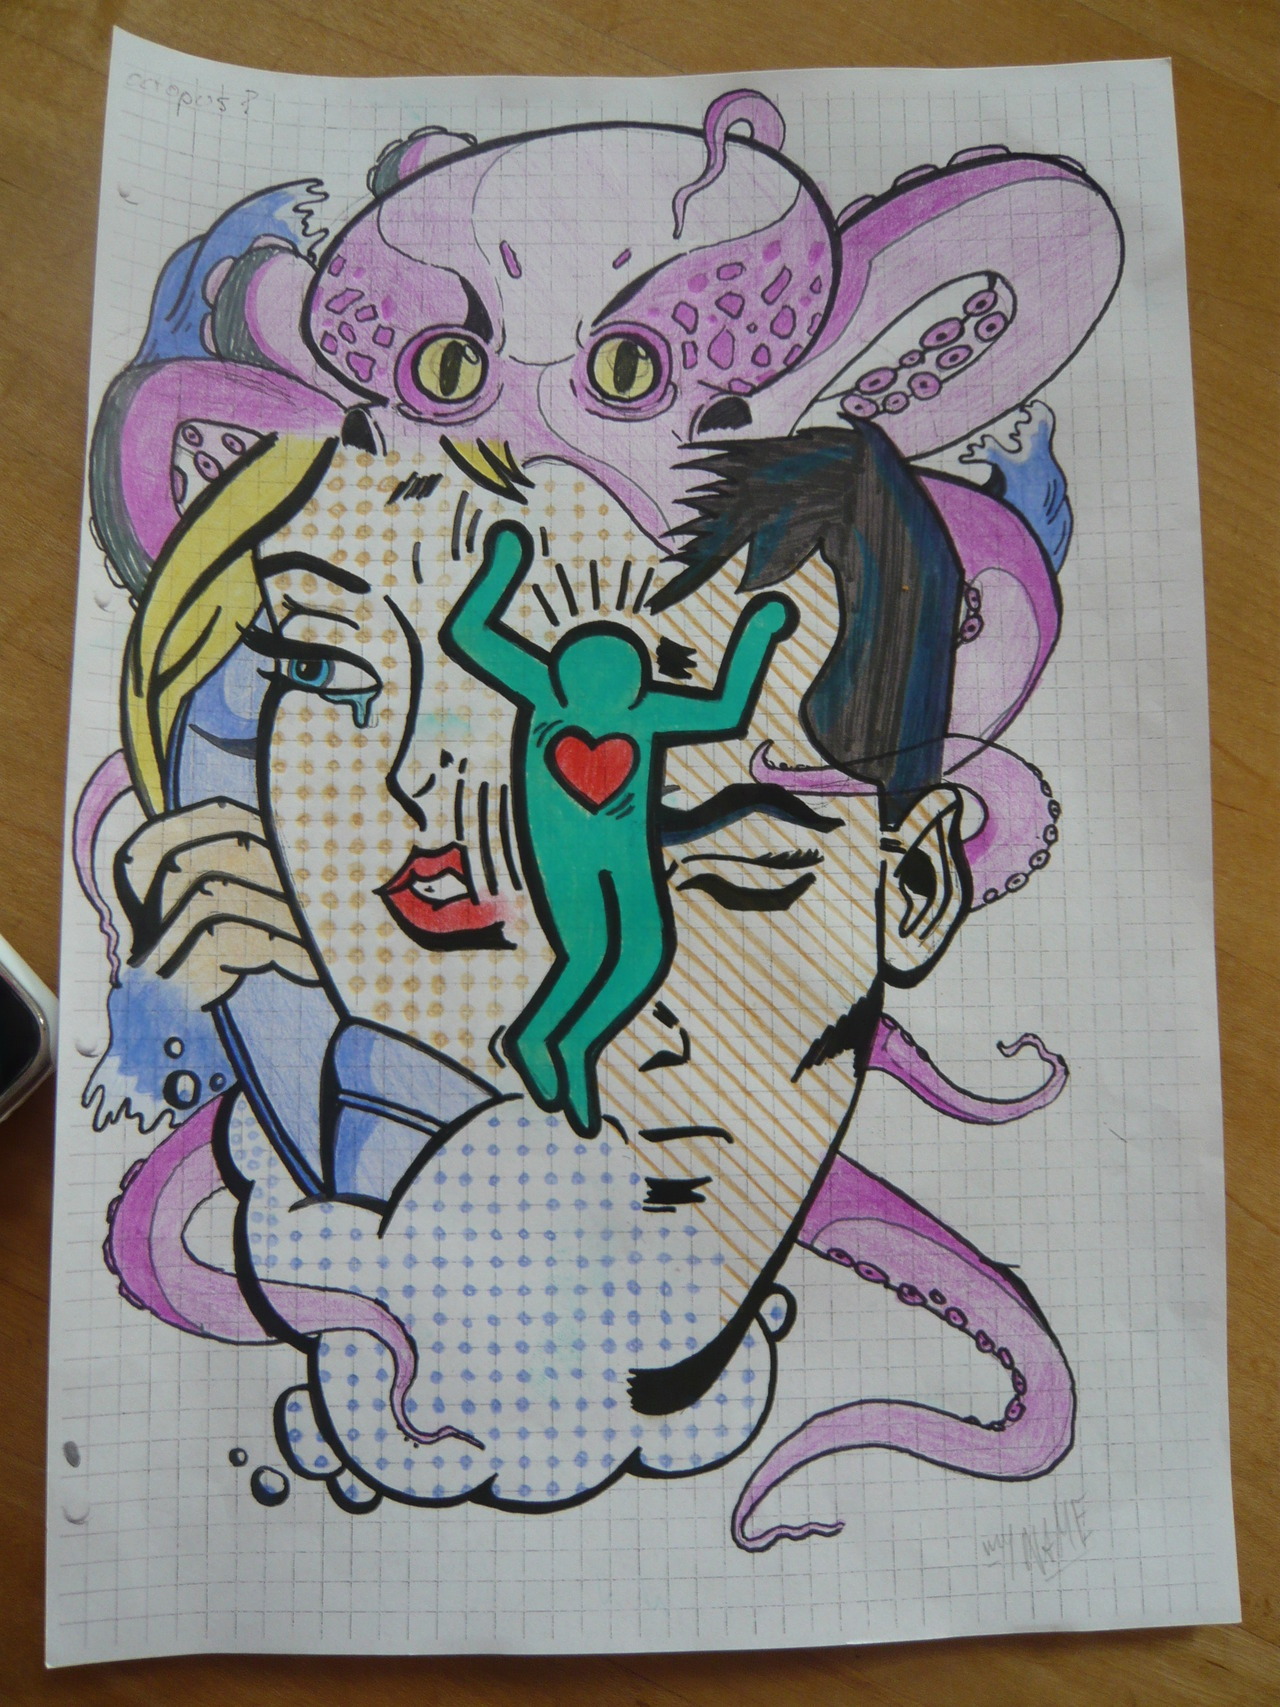 Lichtenstein x Haring x Octopus